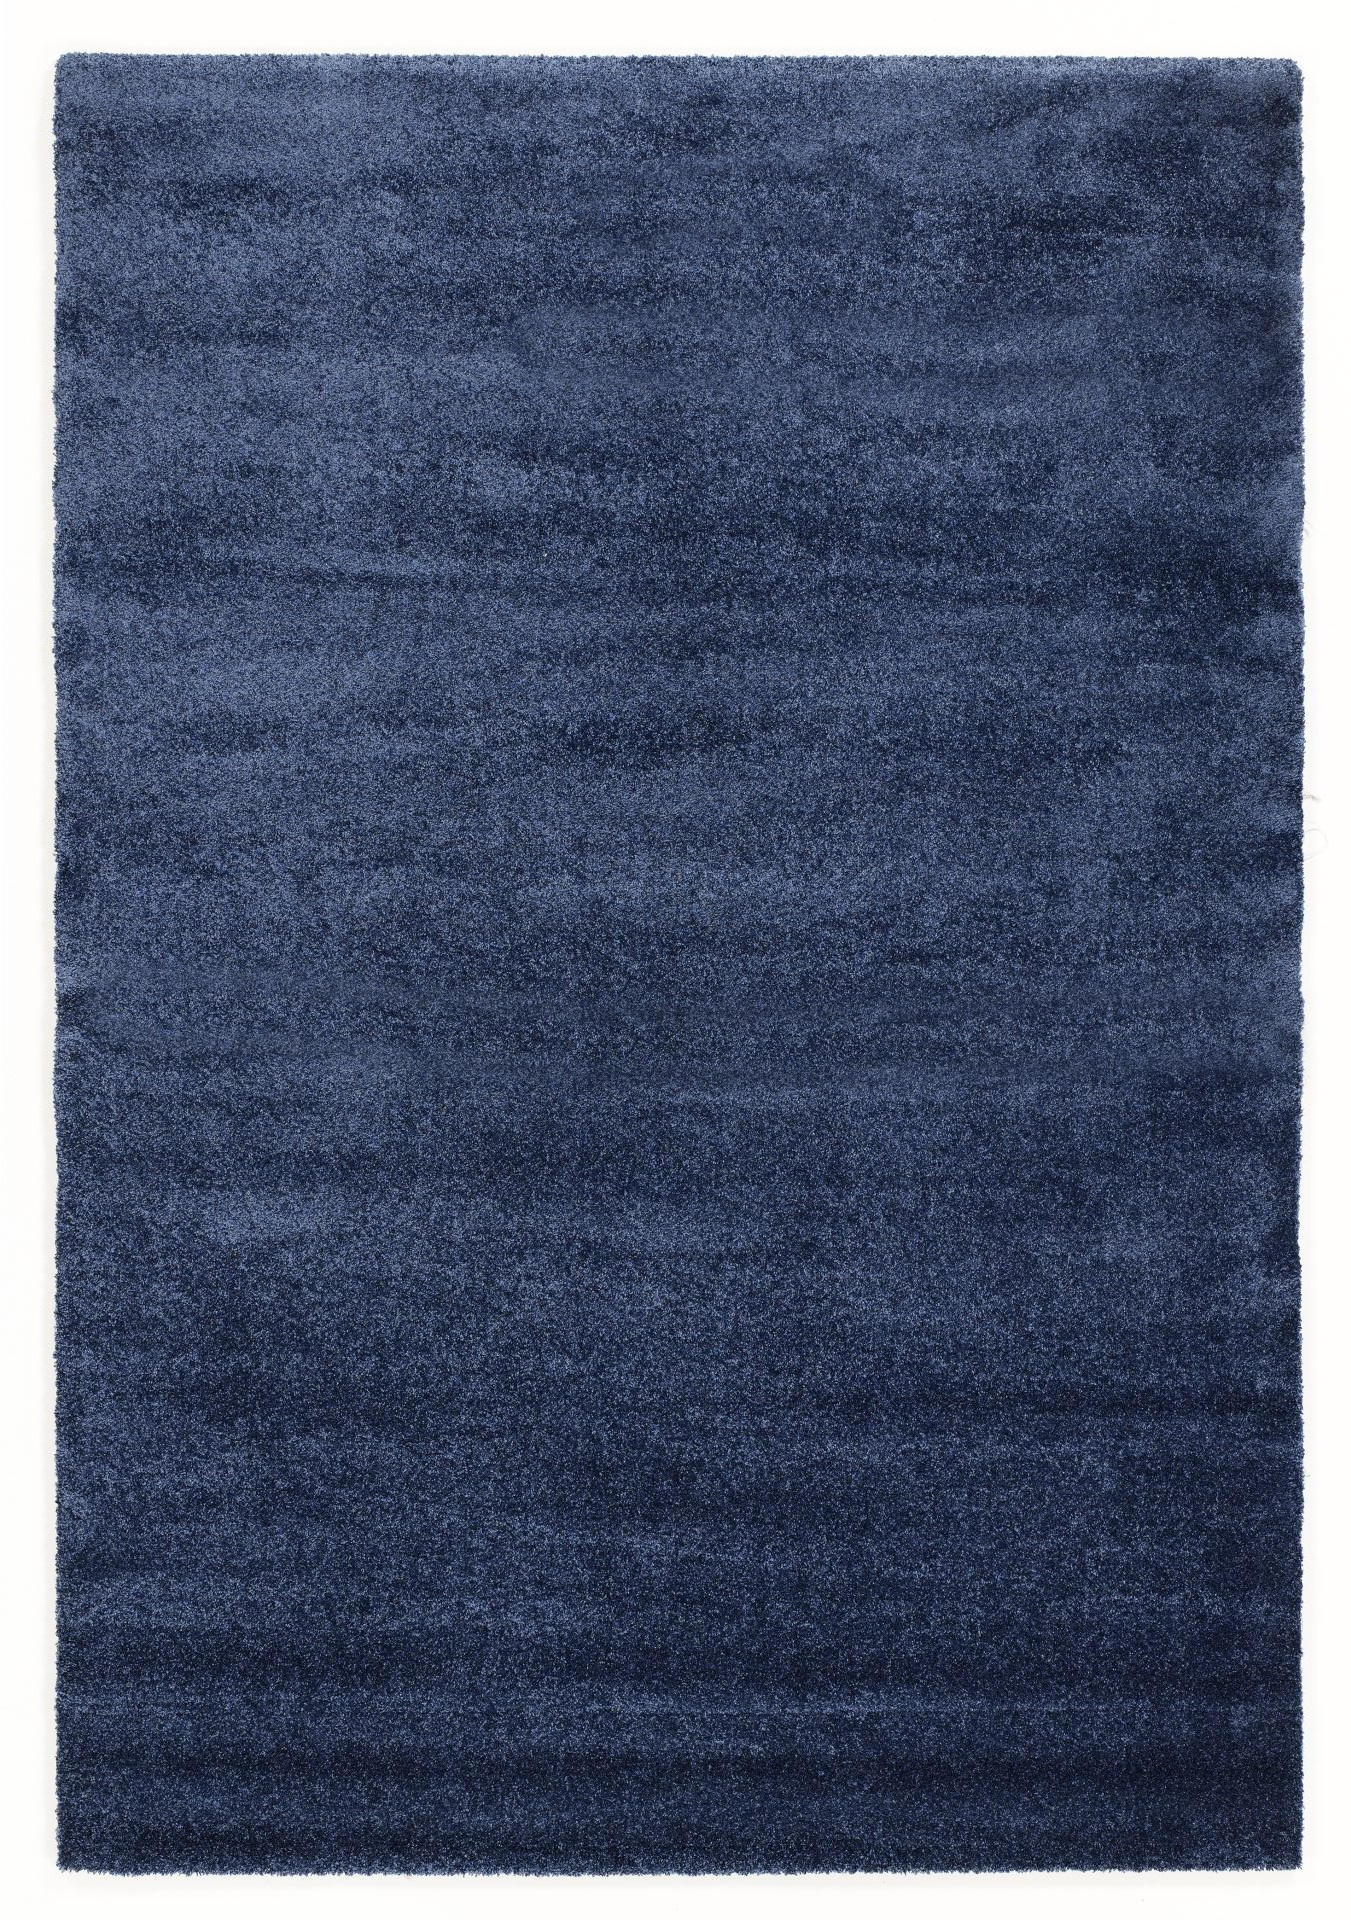 HOCHFLORTEPPICH 65/130 cm Bellevue  - Blau, Basics, Textil (65/130cm) - Novel